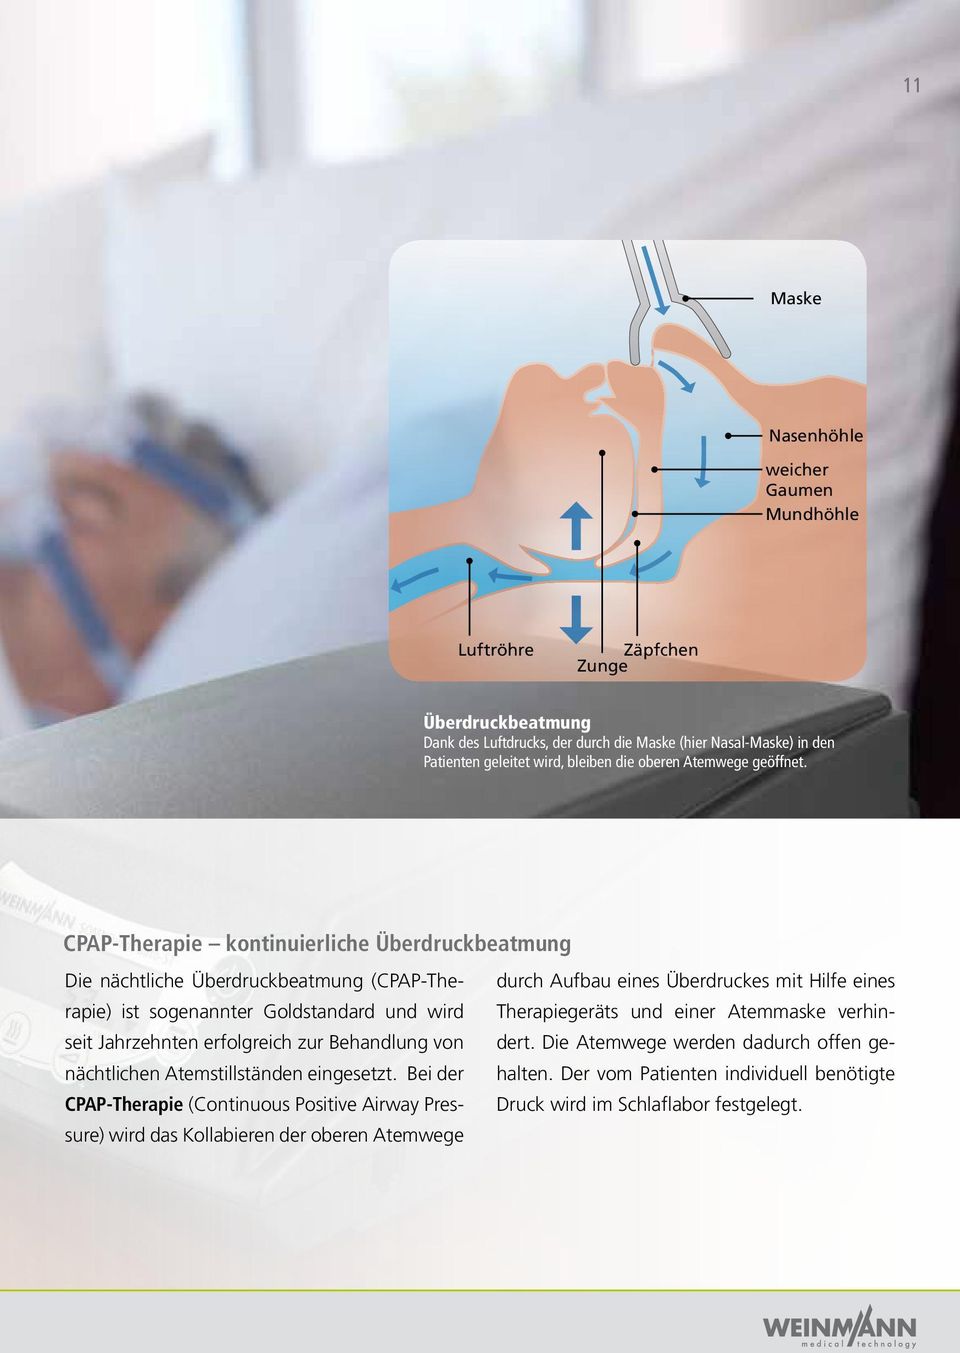 CPAP-Therapie kontinuierliche Überdruckbeatmung Die nächtliche Überdruckbeatmung (CPAP-Therapie) ist sogenannter Goldstandard und wird seit Jahrzehnten erfolgreich zur Behandlung von